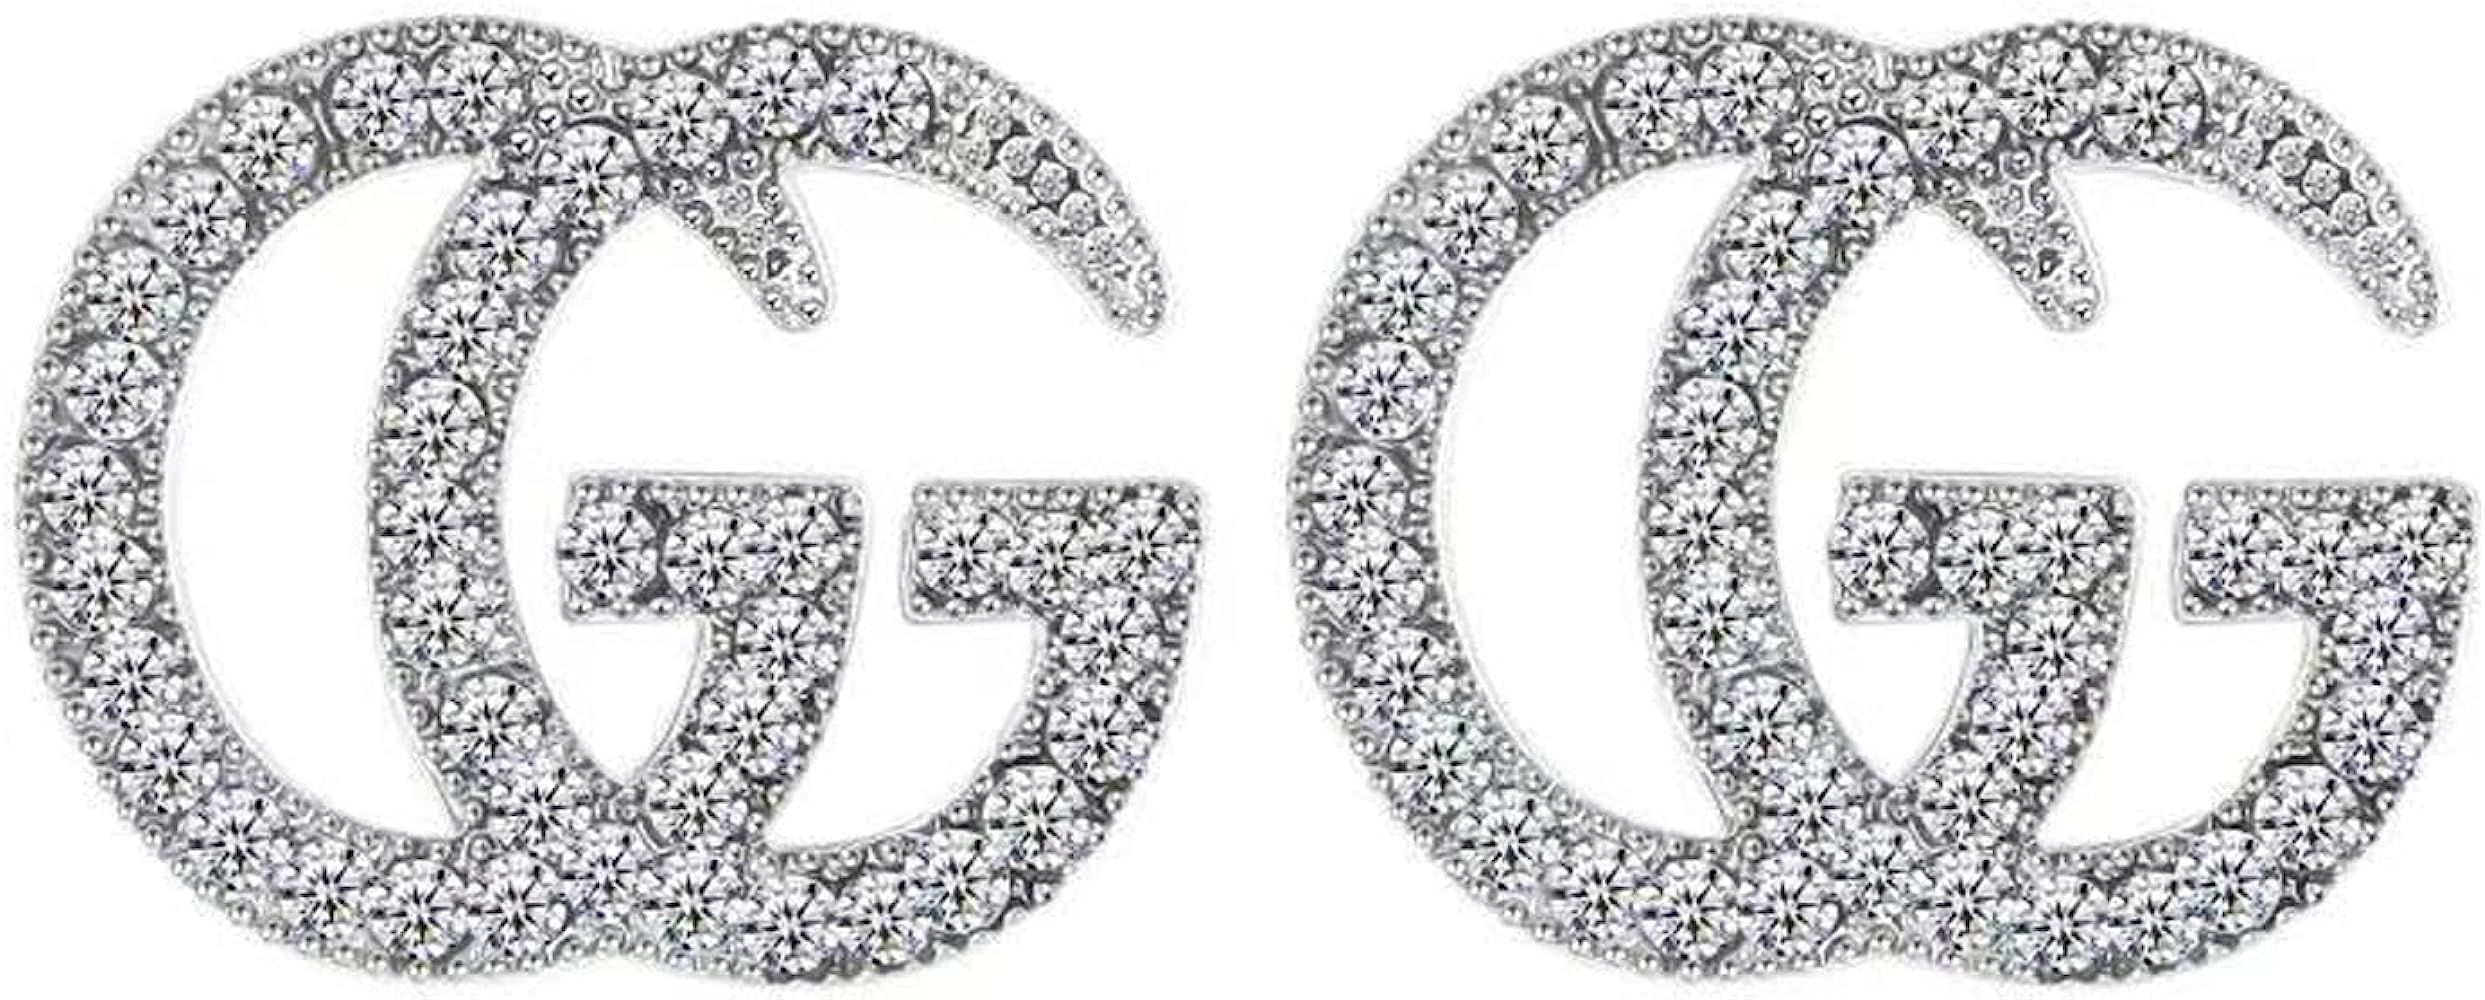 GG Earrings G Letter Earrrings Initial Earrings Hypoallergenic fashion earring trendy earrings Daint | Amazon (US)